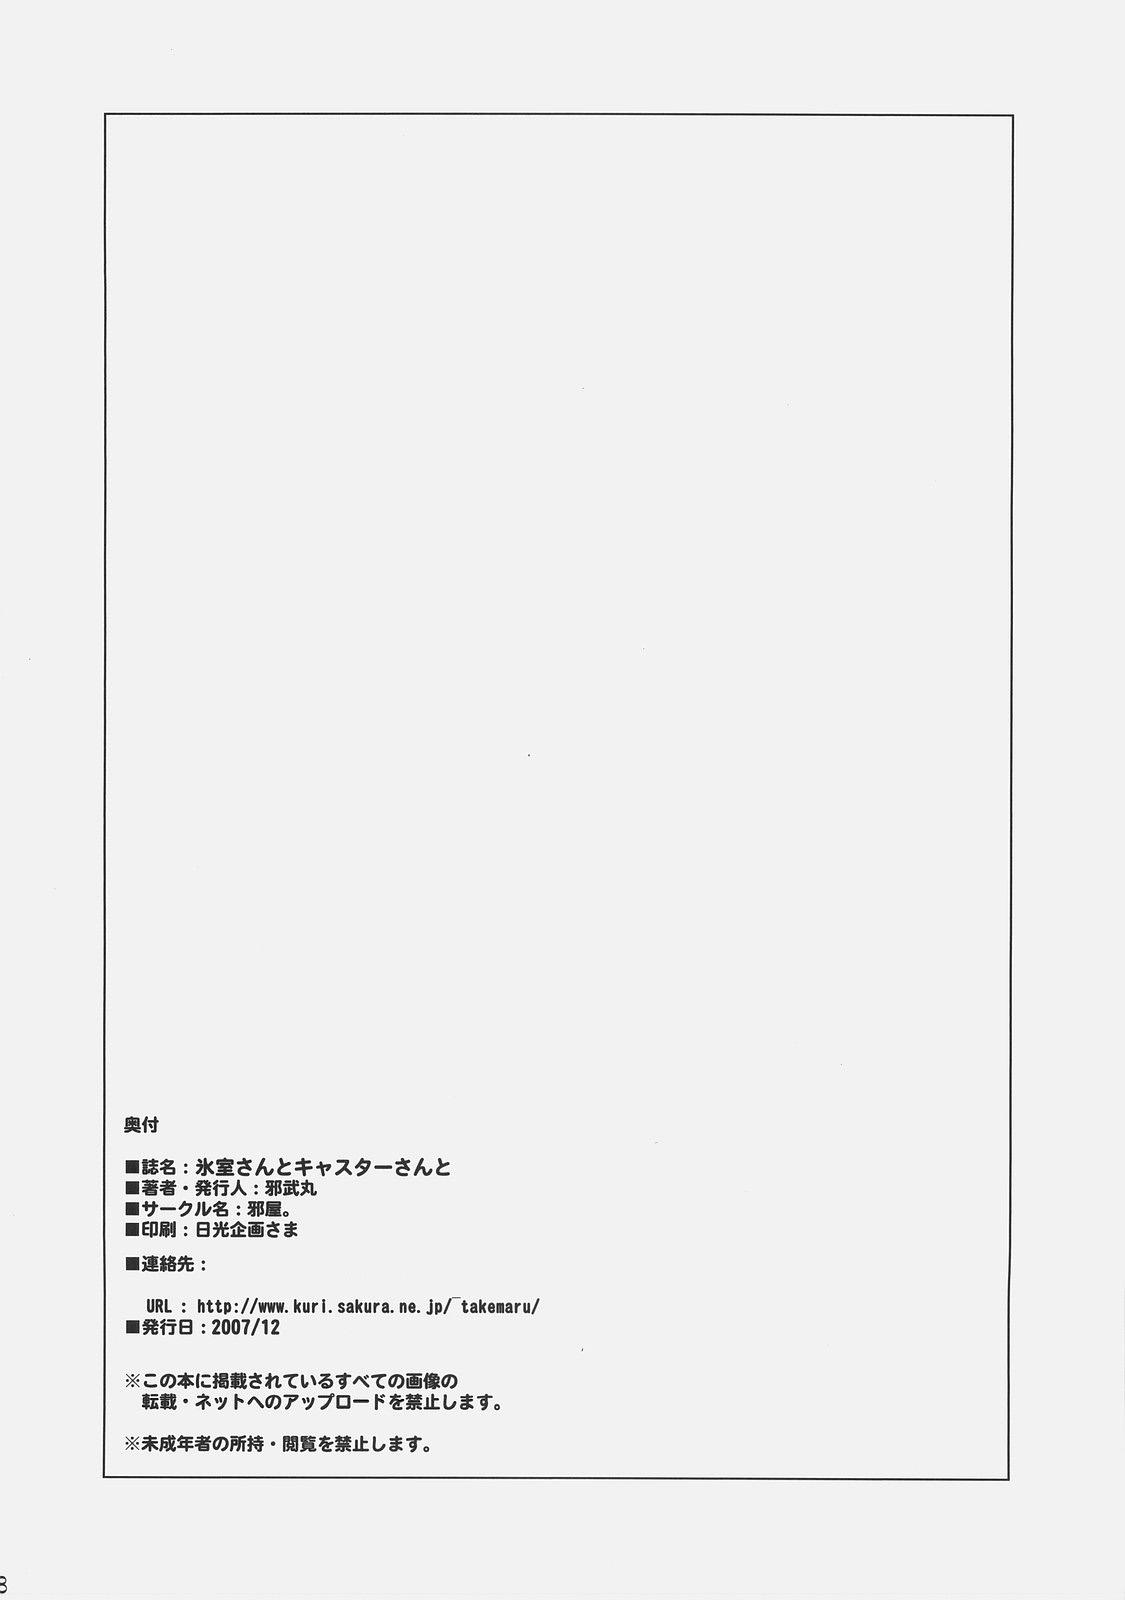 Creampies (C73) [YOKOSHIMAYA. (Yokoshima Takemaru)] Himuro-san to Caster-san to - Himuro Renai Jiken Sono 5. (Fate/hollow ataraxia) - Fate hollow ataraxia Free Amateur - Page 27